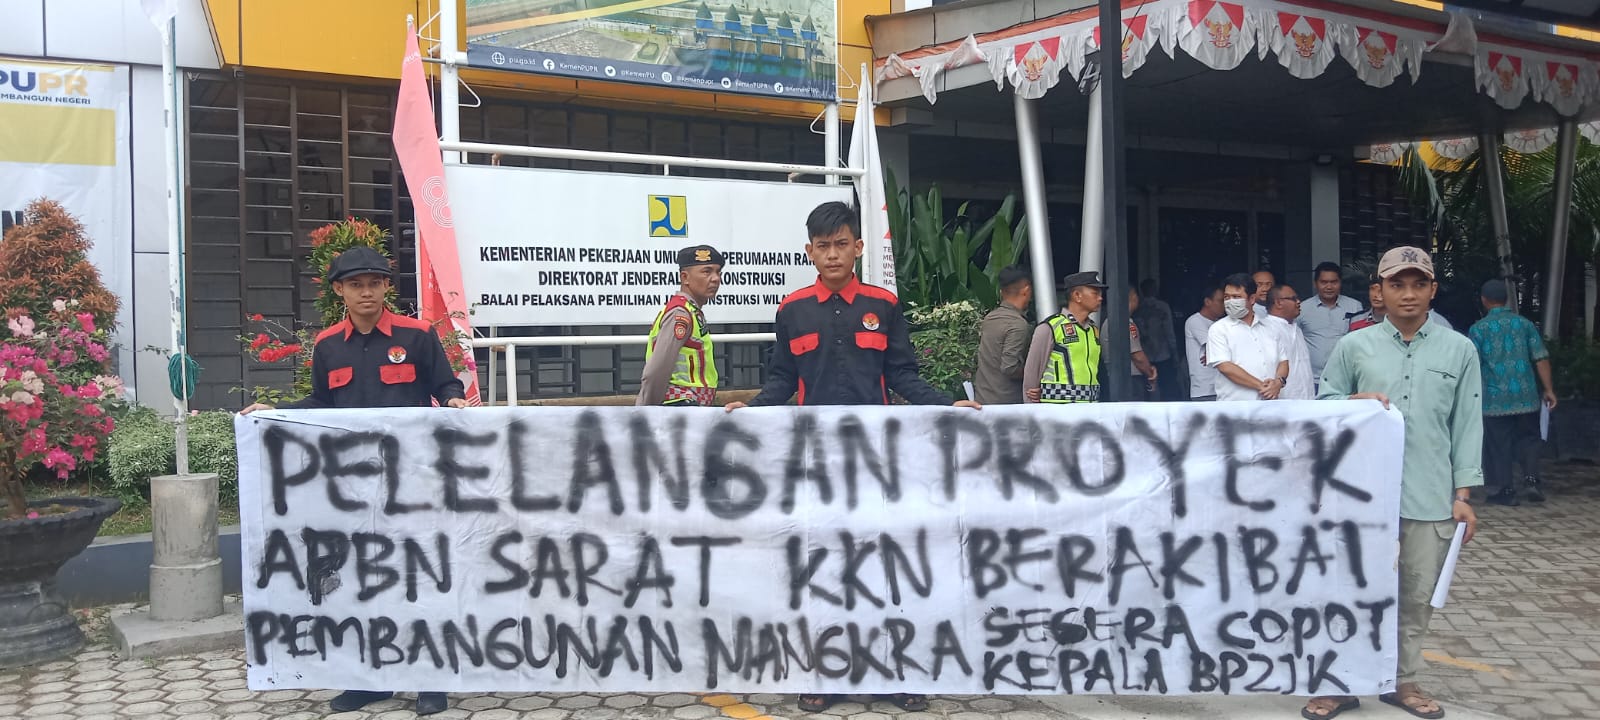 Demo Mahasiswa Desak KPK Usut Indikasi KKN Pada Pelelangan Proyek di BP2JK Aceh